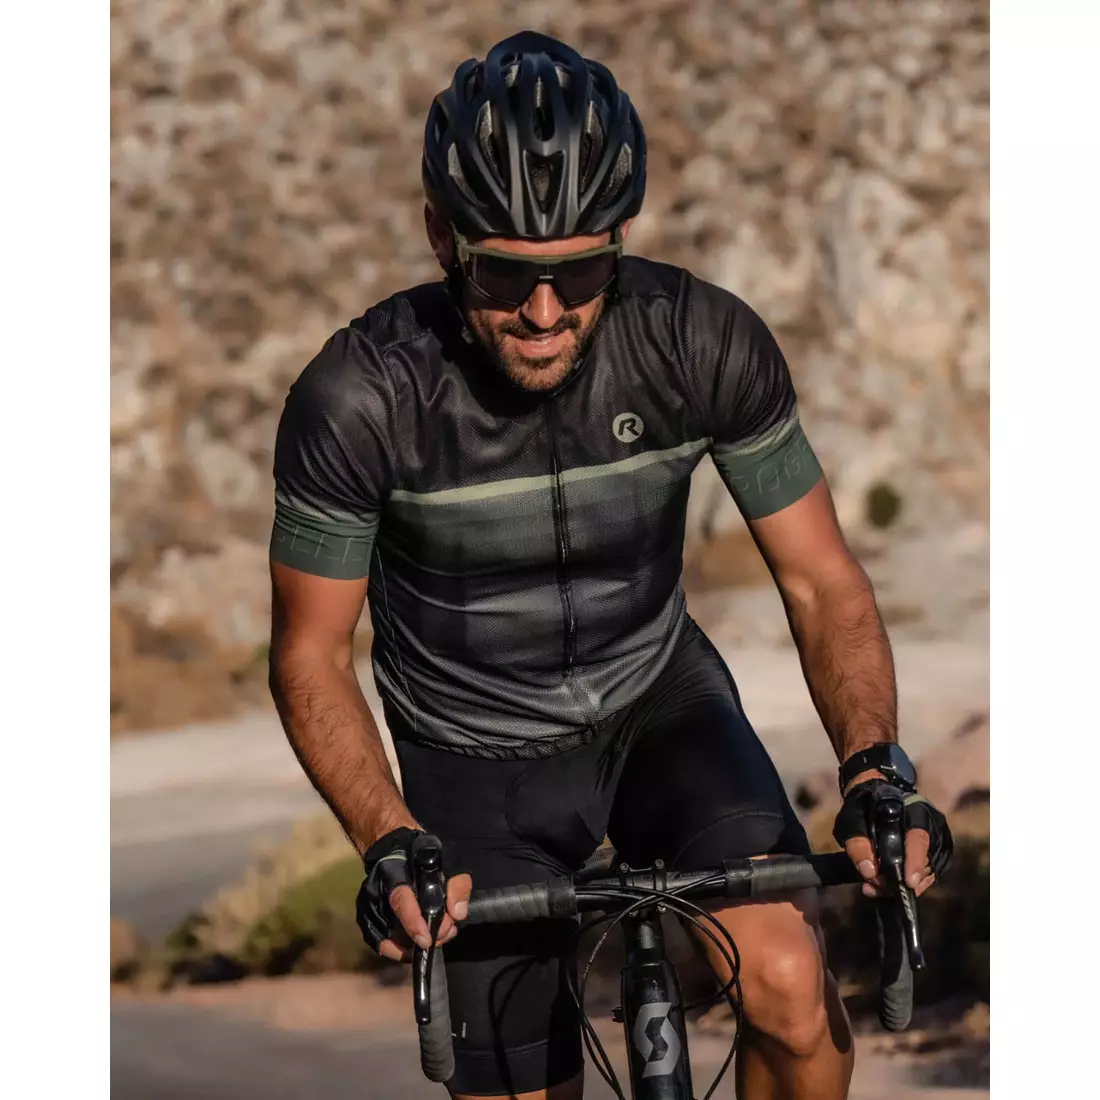 Rogelli HERO II férfi kerékpáros mez, fekete és zöld